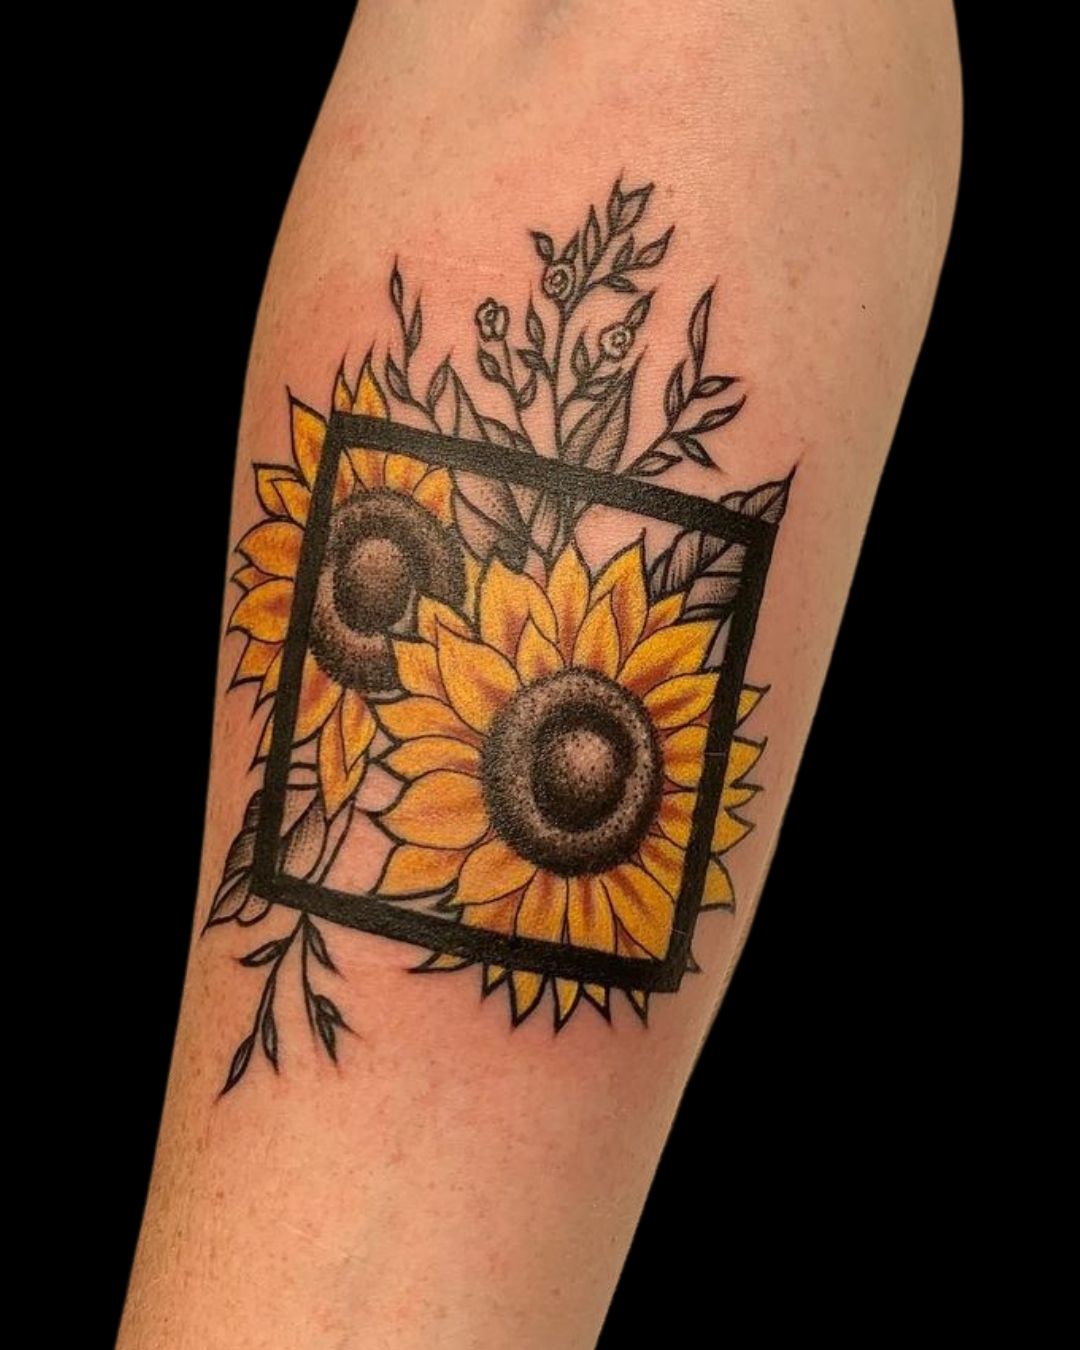 27 Amazing Flower Tattoo Inspirations – Club Tattoo